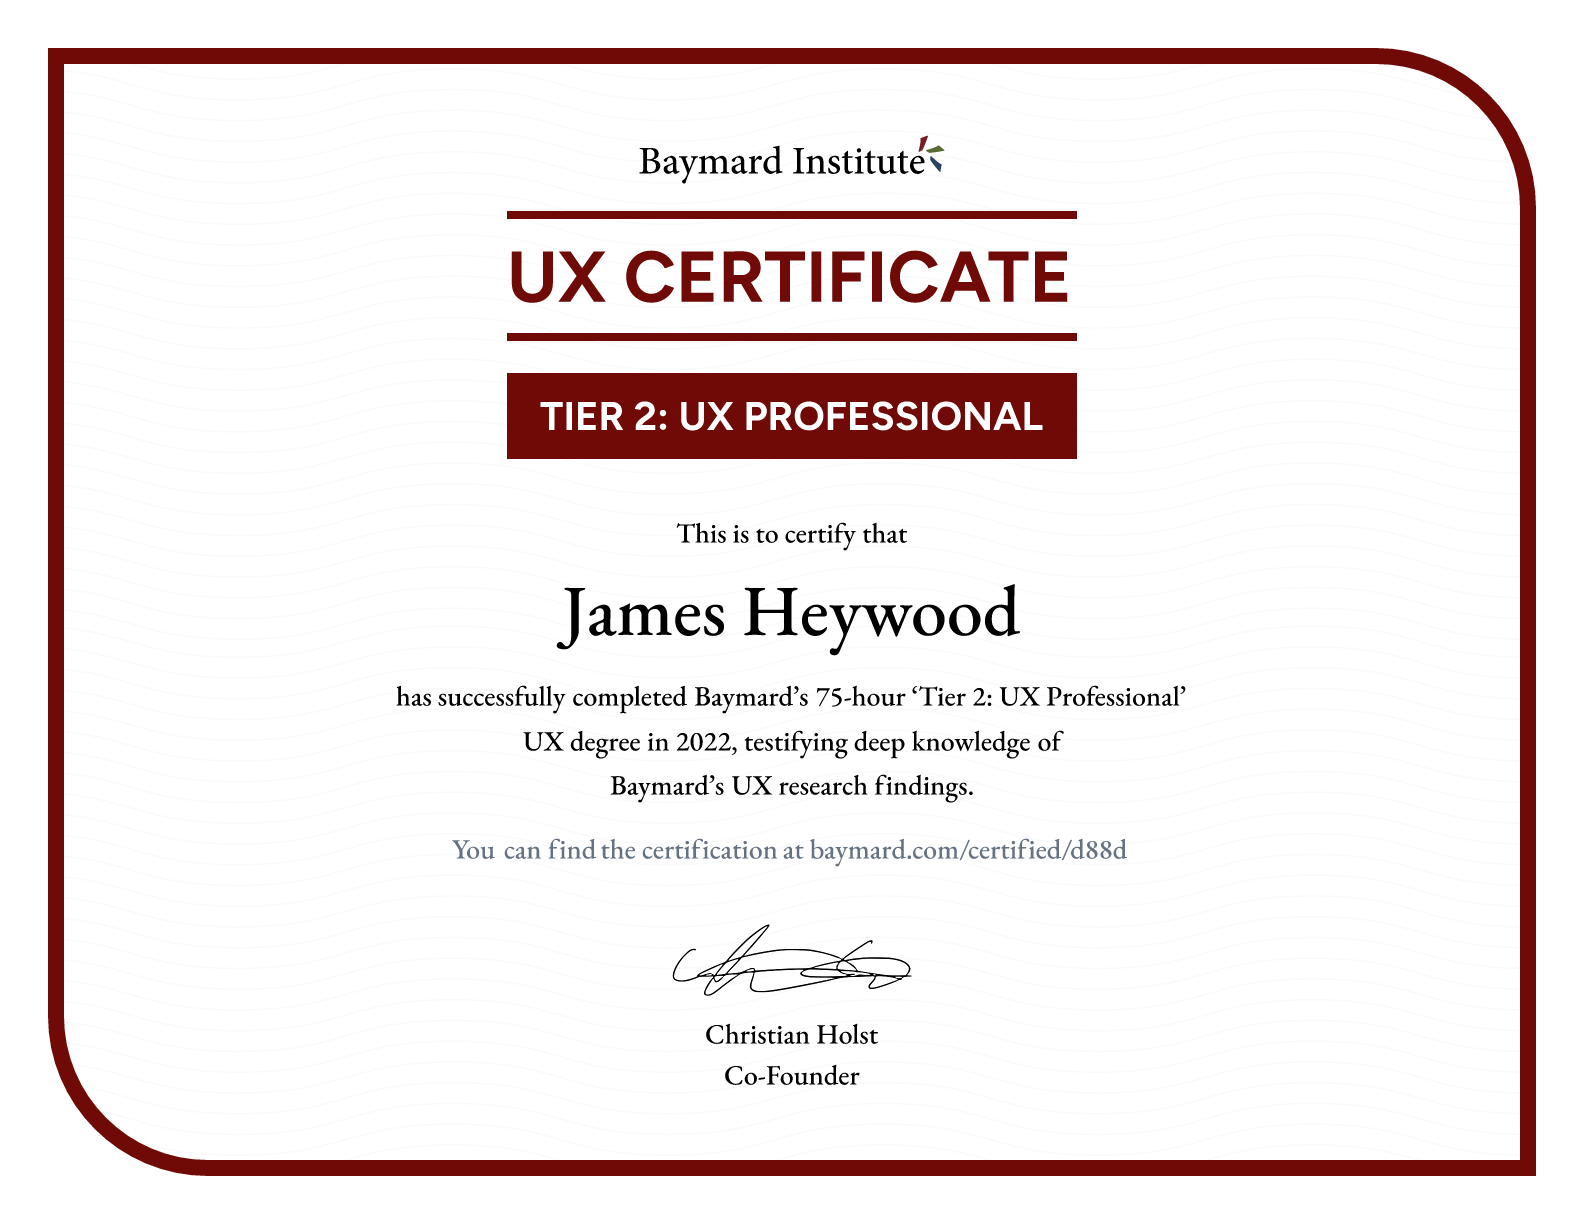 James Heywood’s certificate